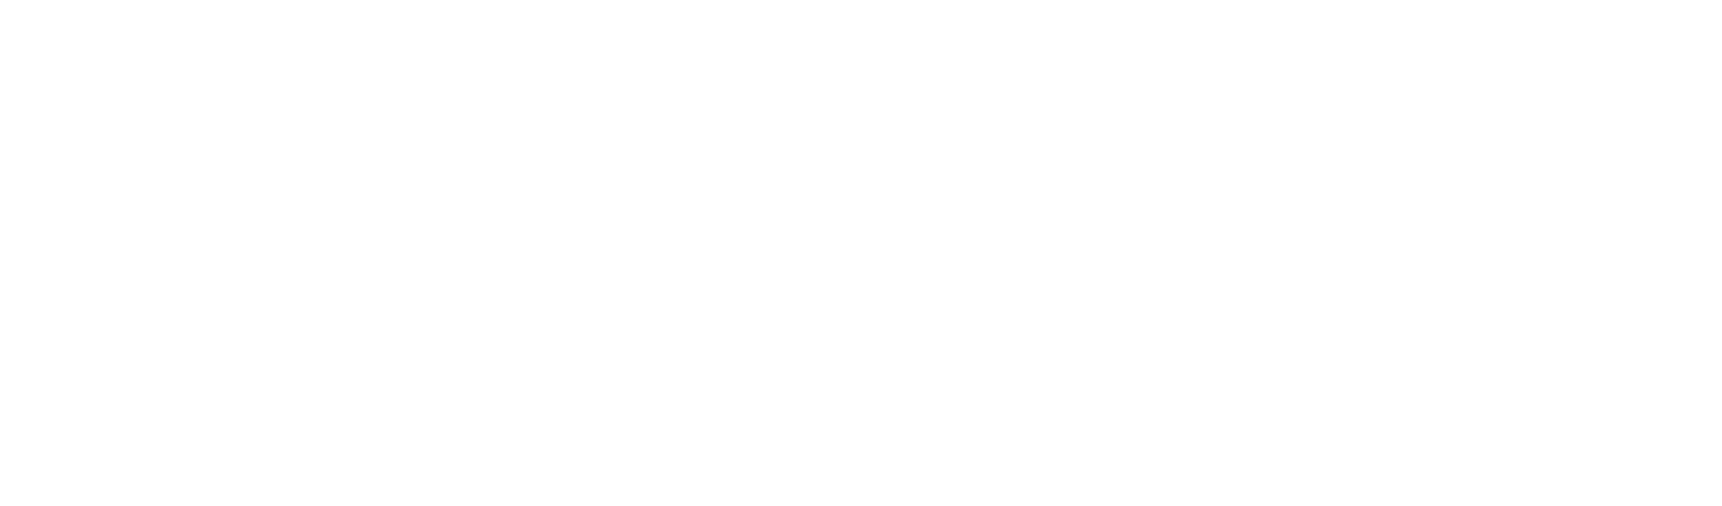 Superior HealthPlan logo